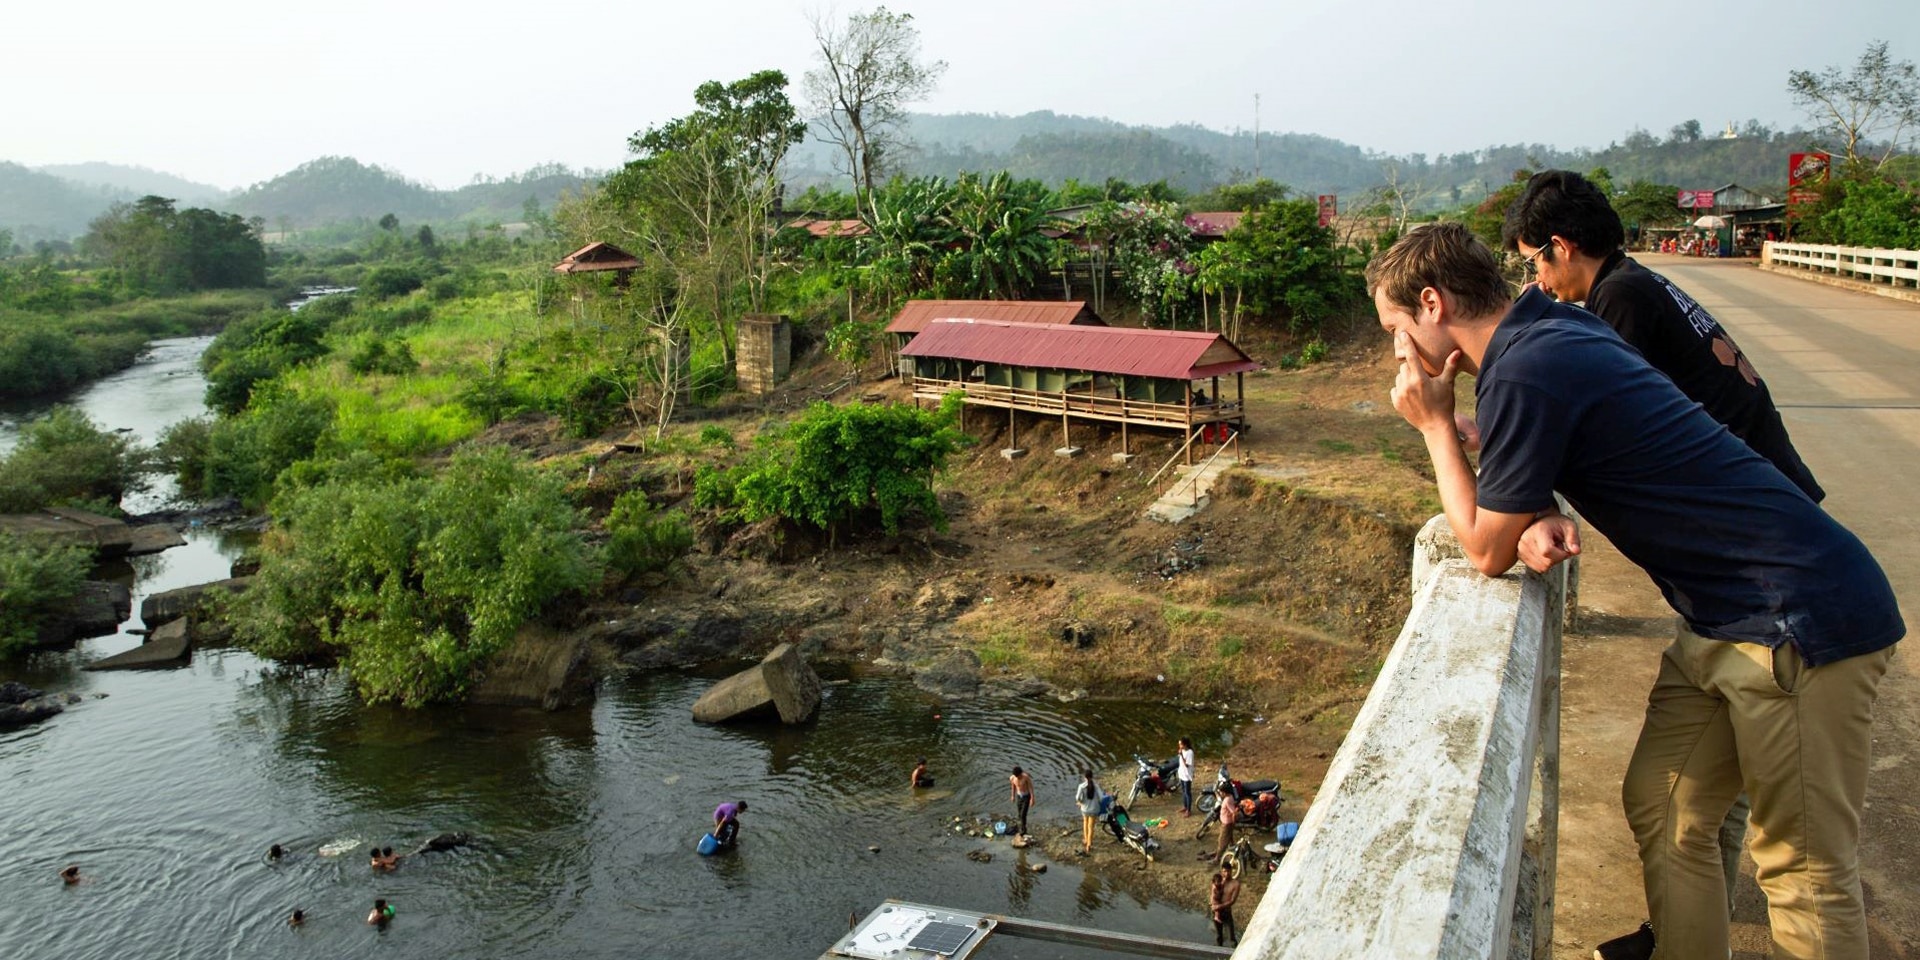  Zwei Personen lehnen sich an eine Brückenmauer und schauen auf eine Gruppe von Arbeitern, die im Fluss einen Sensor installieren.